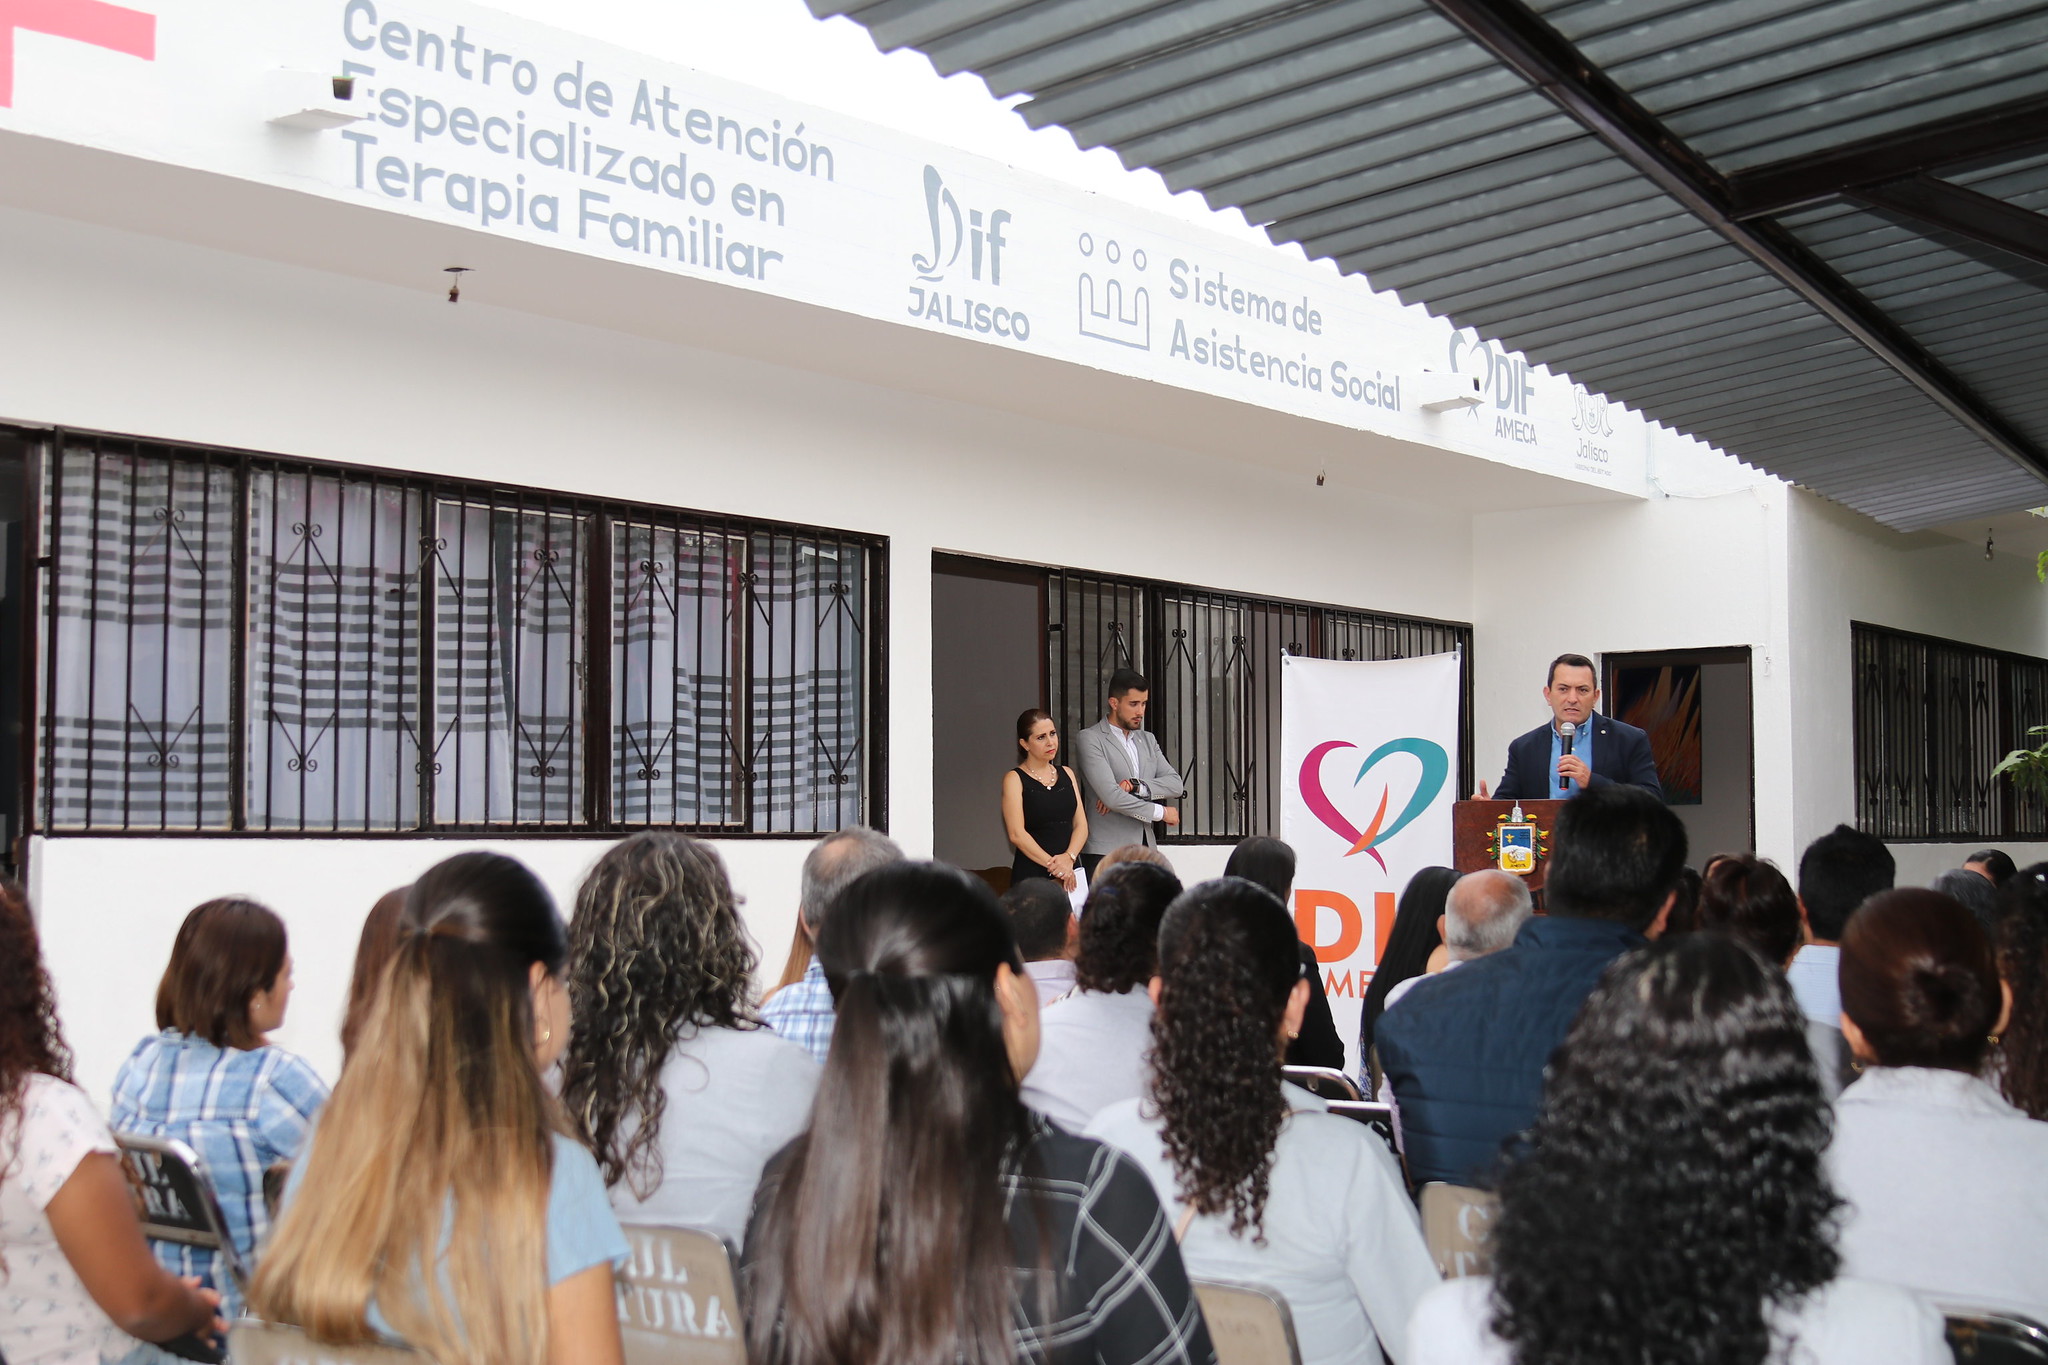 Inauguración del Centro de Atención Especializada en Terapia Familiar del Municipio de Ameca.